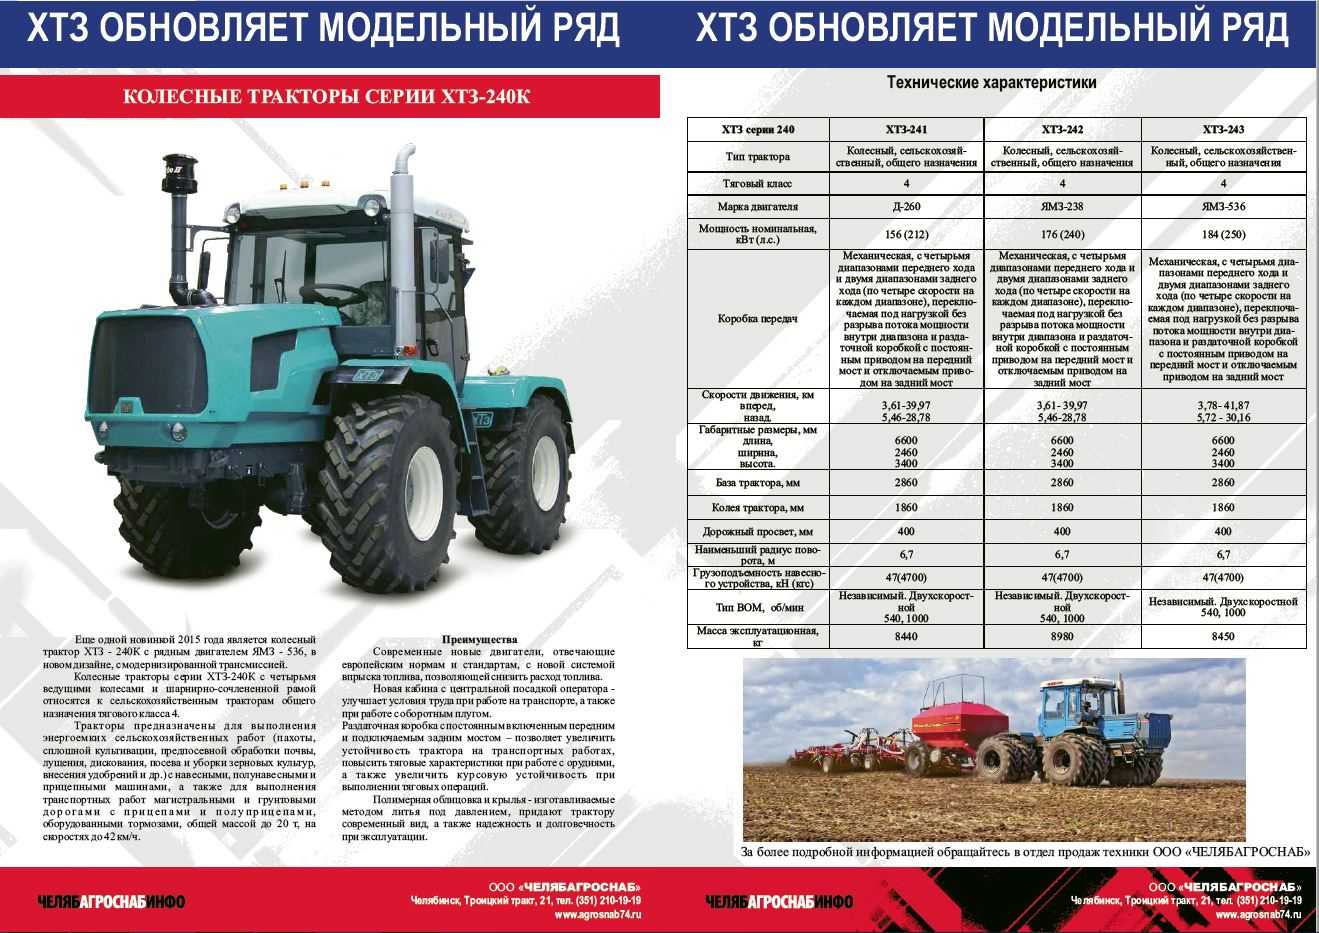 ✅ трактора хтз — модели их технические характеристики, особенности - байтрактор.рф